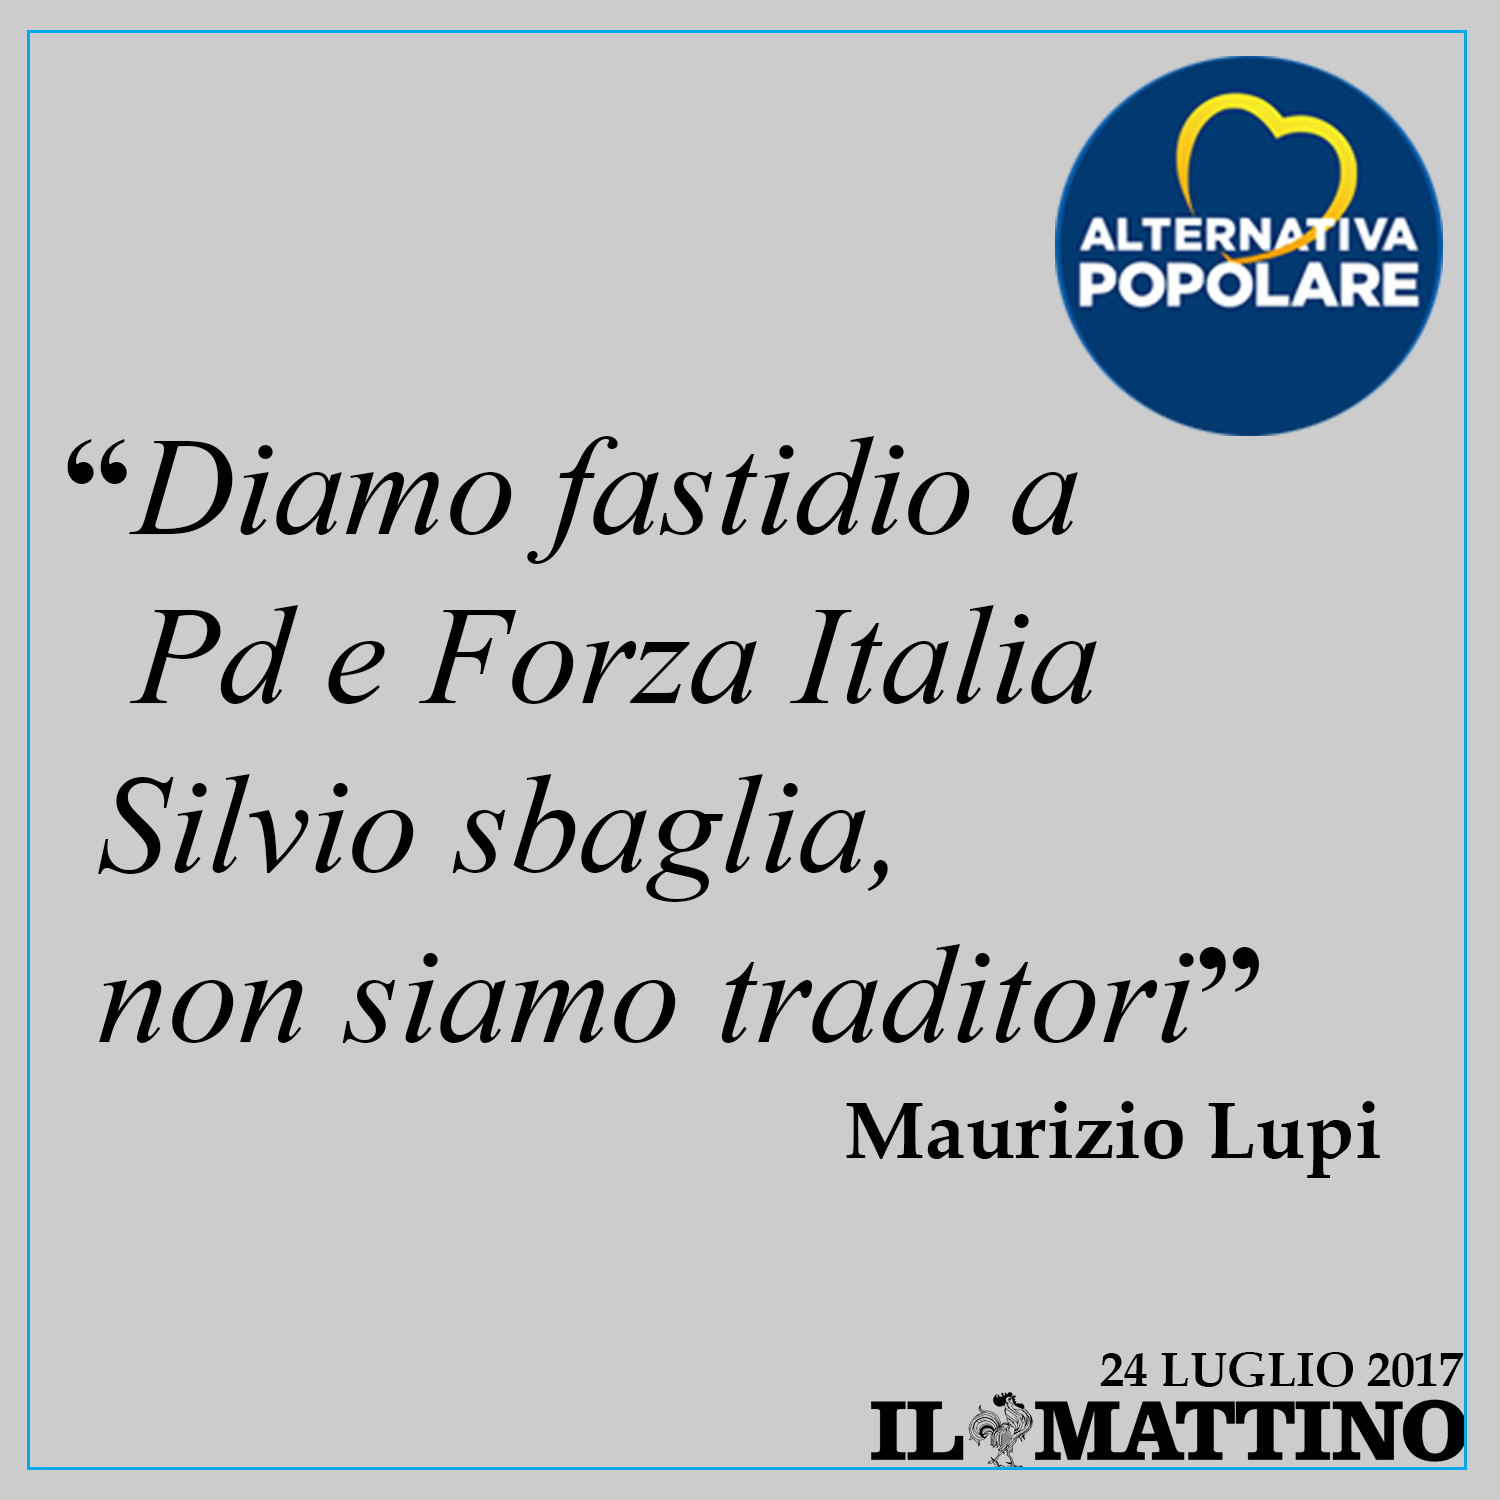 Intervistato dal Mattino "Diamo fastidio a Pd e Forza Italia Silvio sbaglia, non siamo traditori."